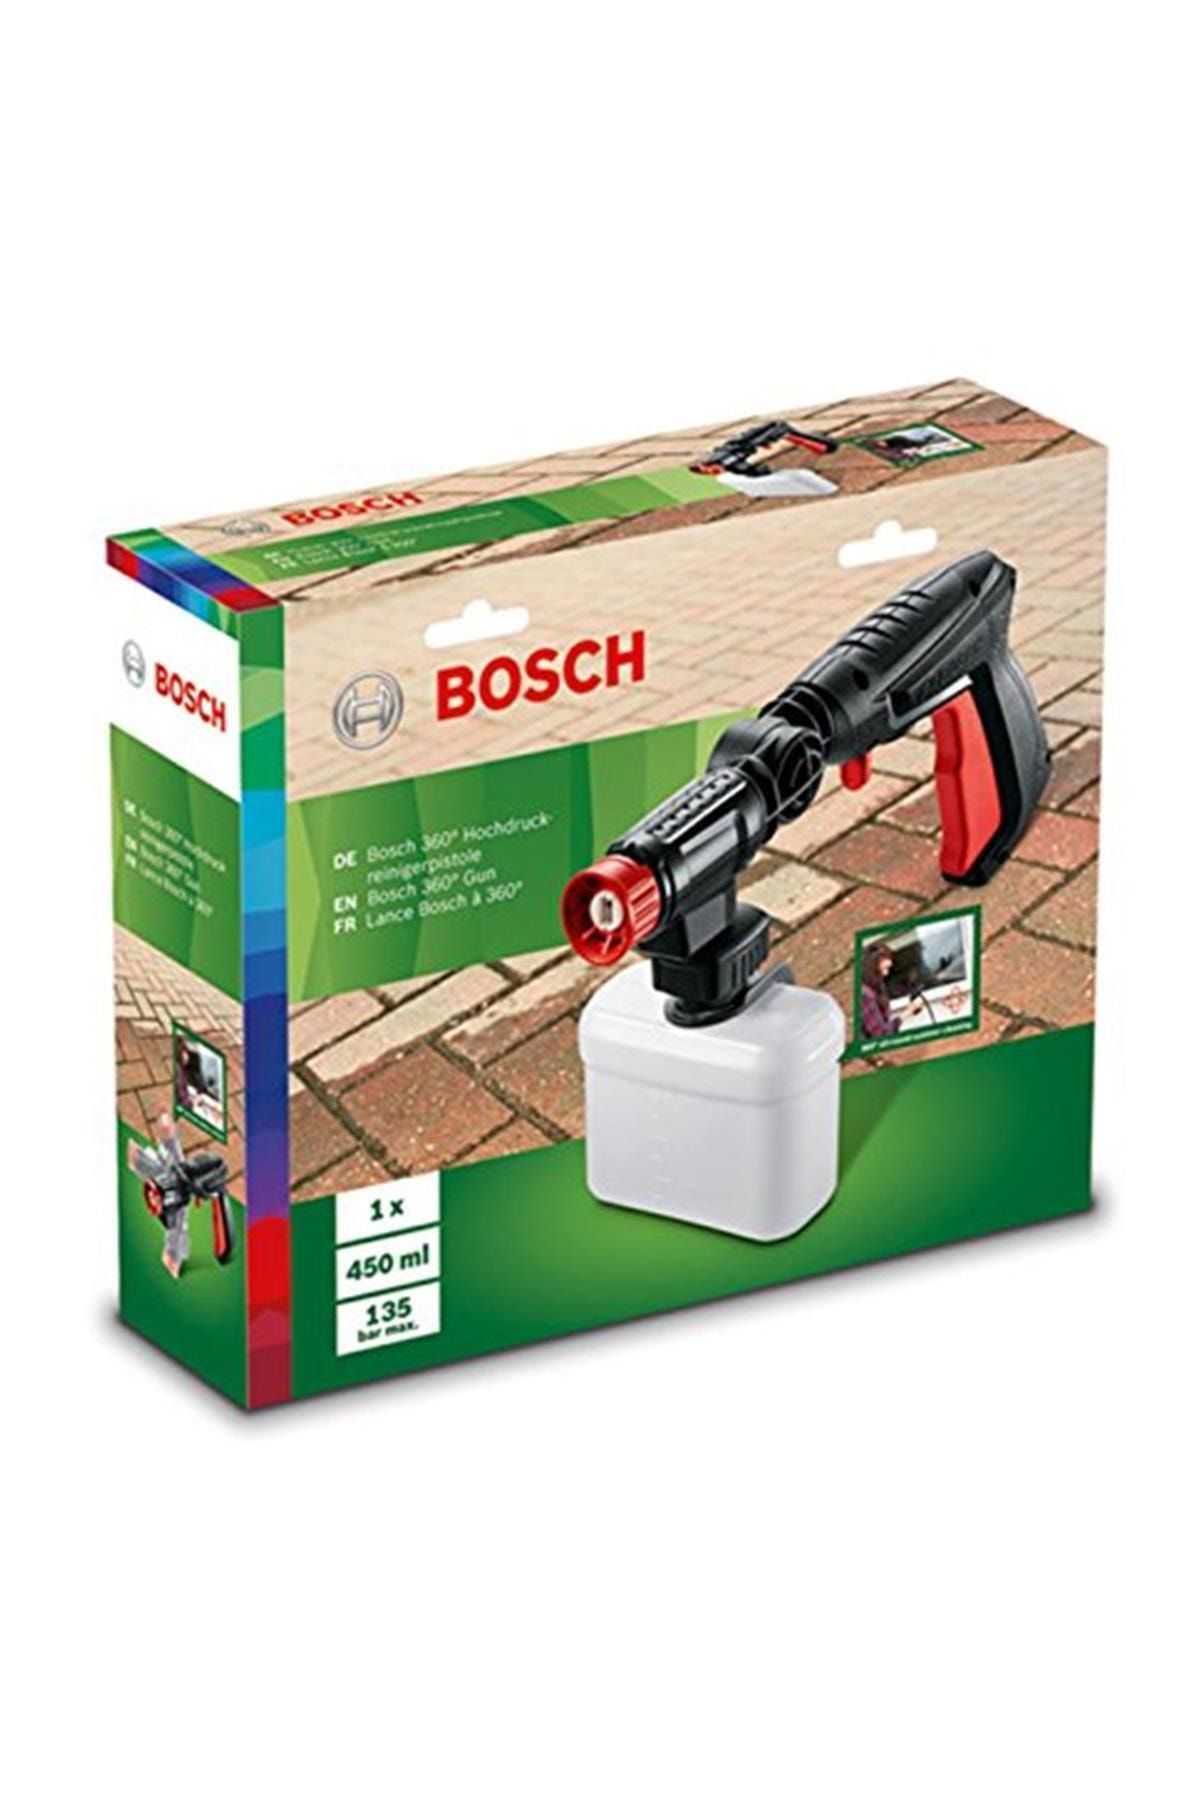 Bosch Marka: Home And Garden Yüksek Basınçlı Yıkama Makineleri Için 360° Temizlik Tabancası (easyaq